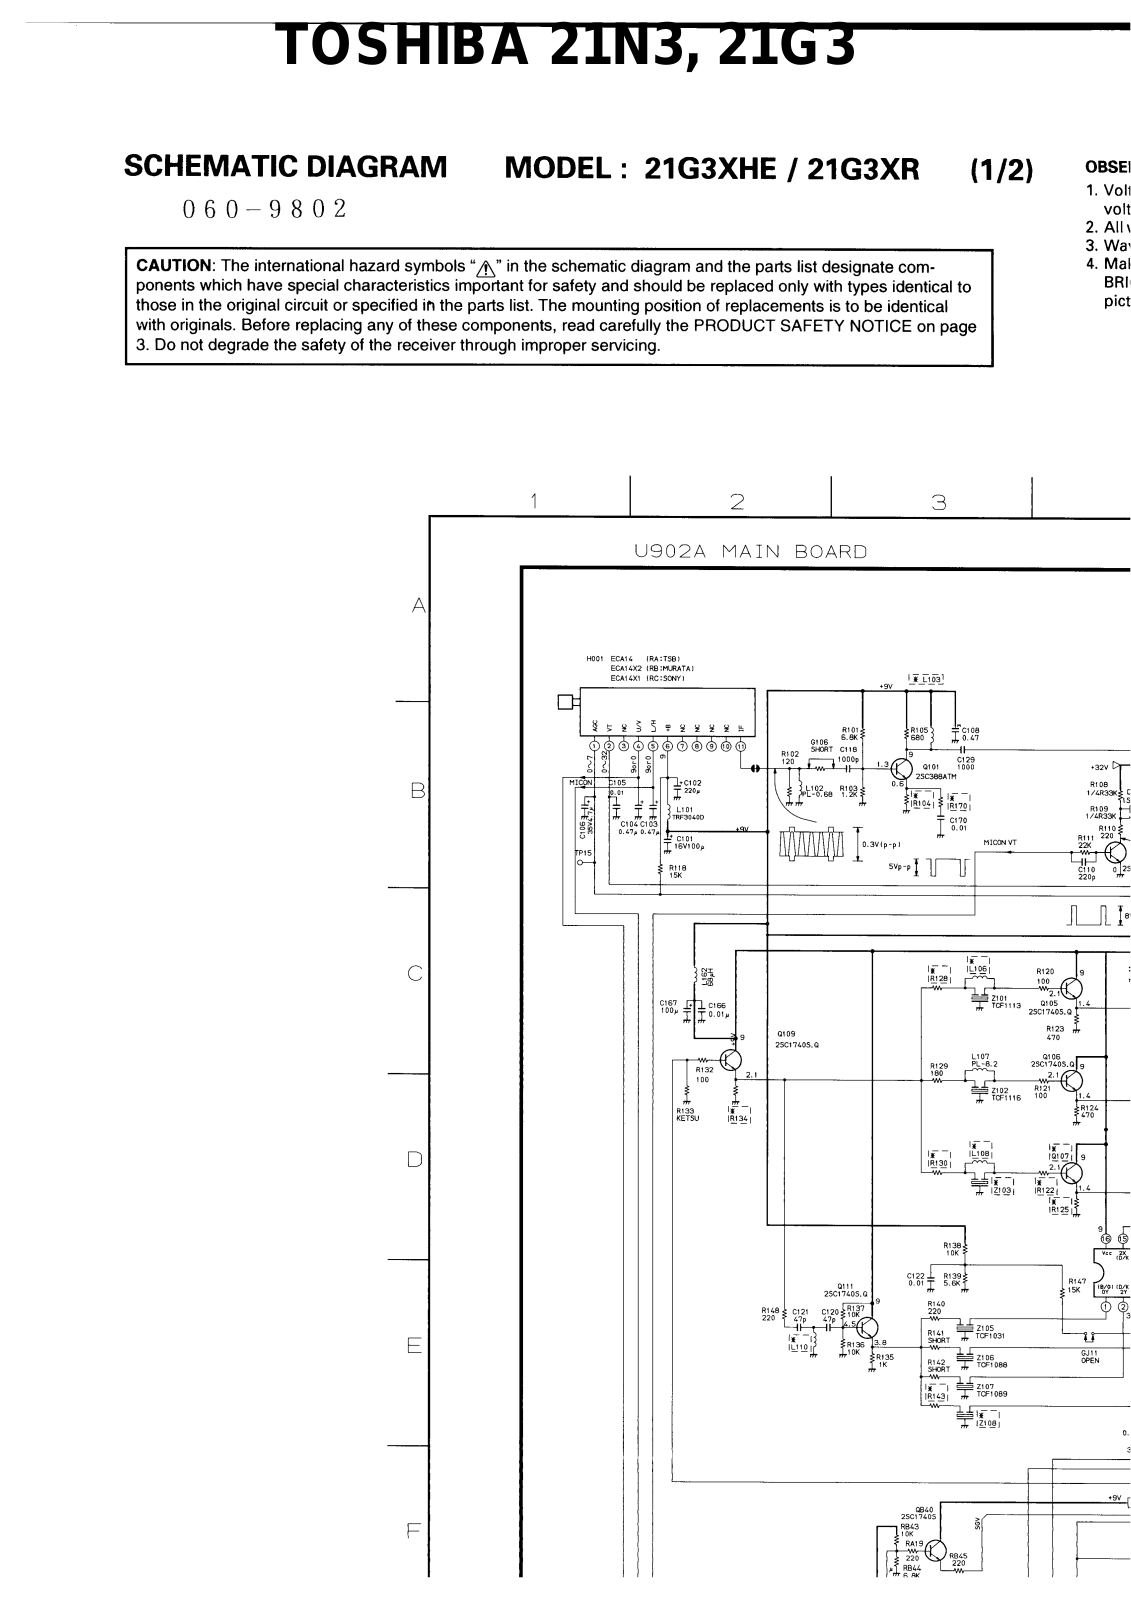 Toshiba 21G3, 21N3 Cirquit Diagram